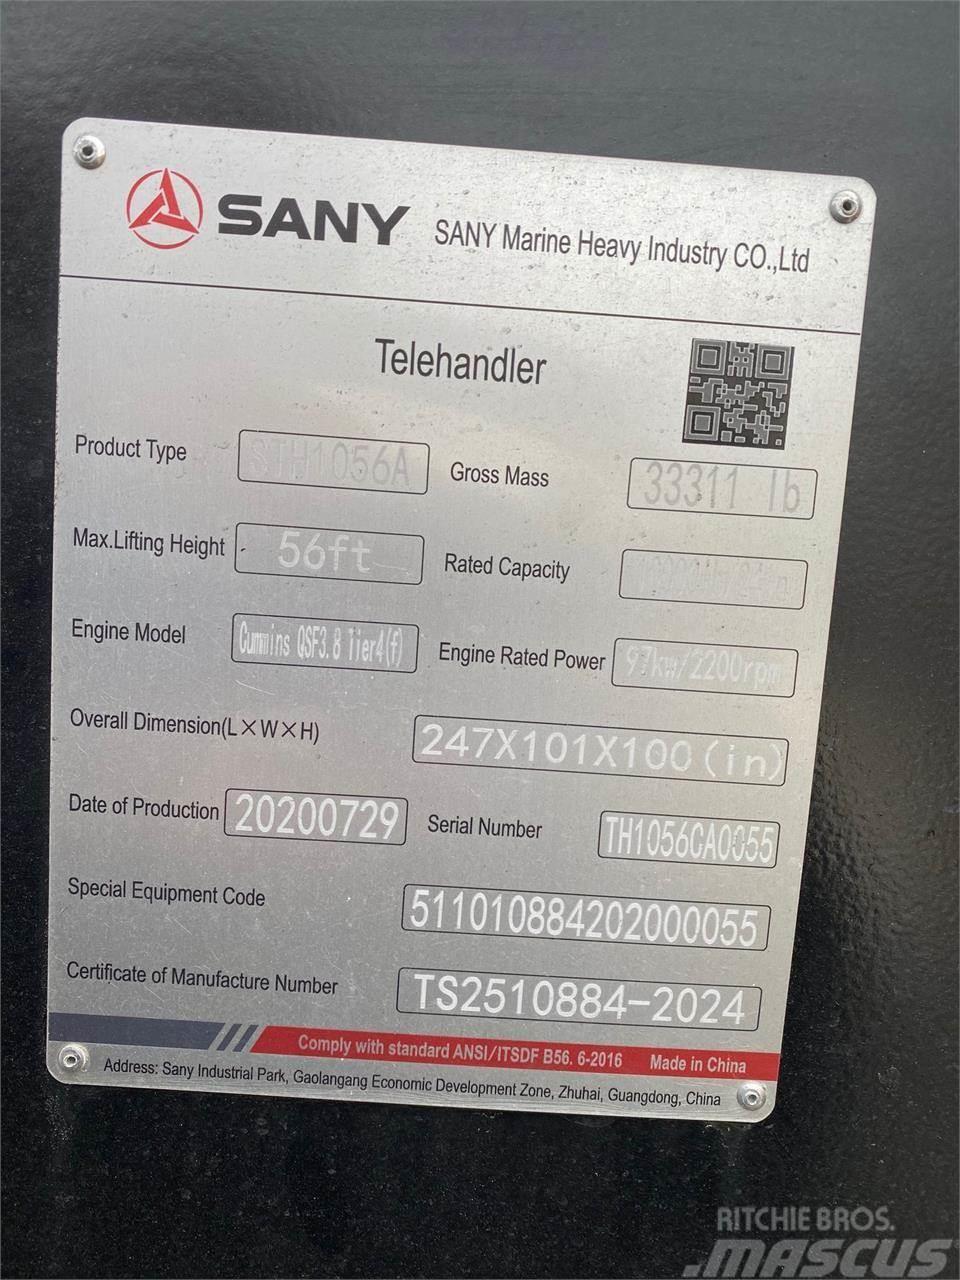 Sany STH1056A Teleskoplastare